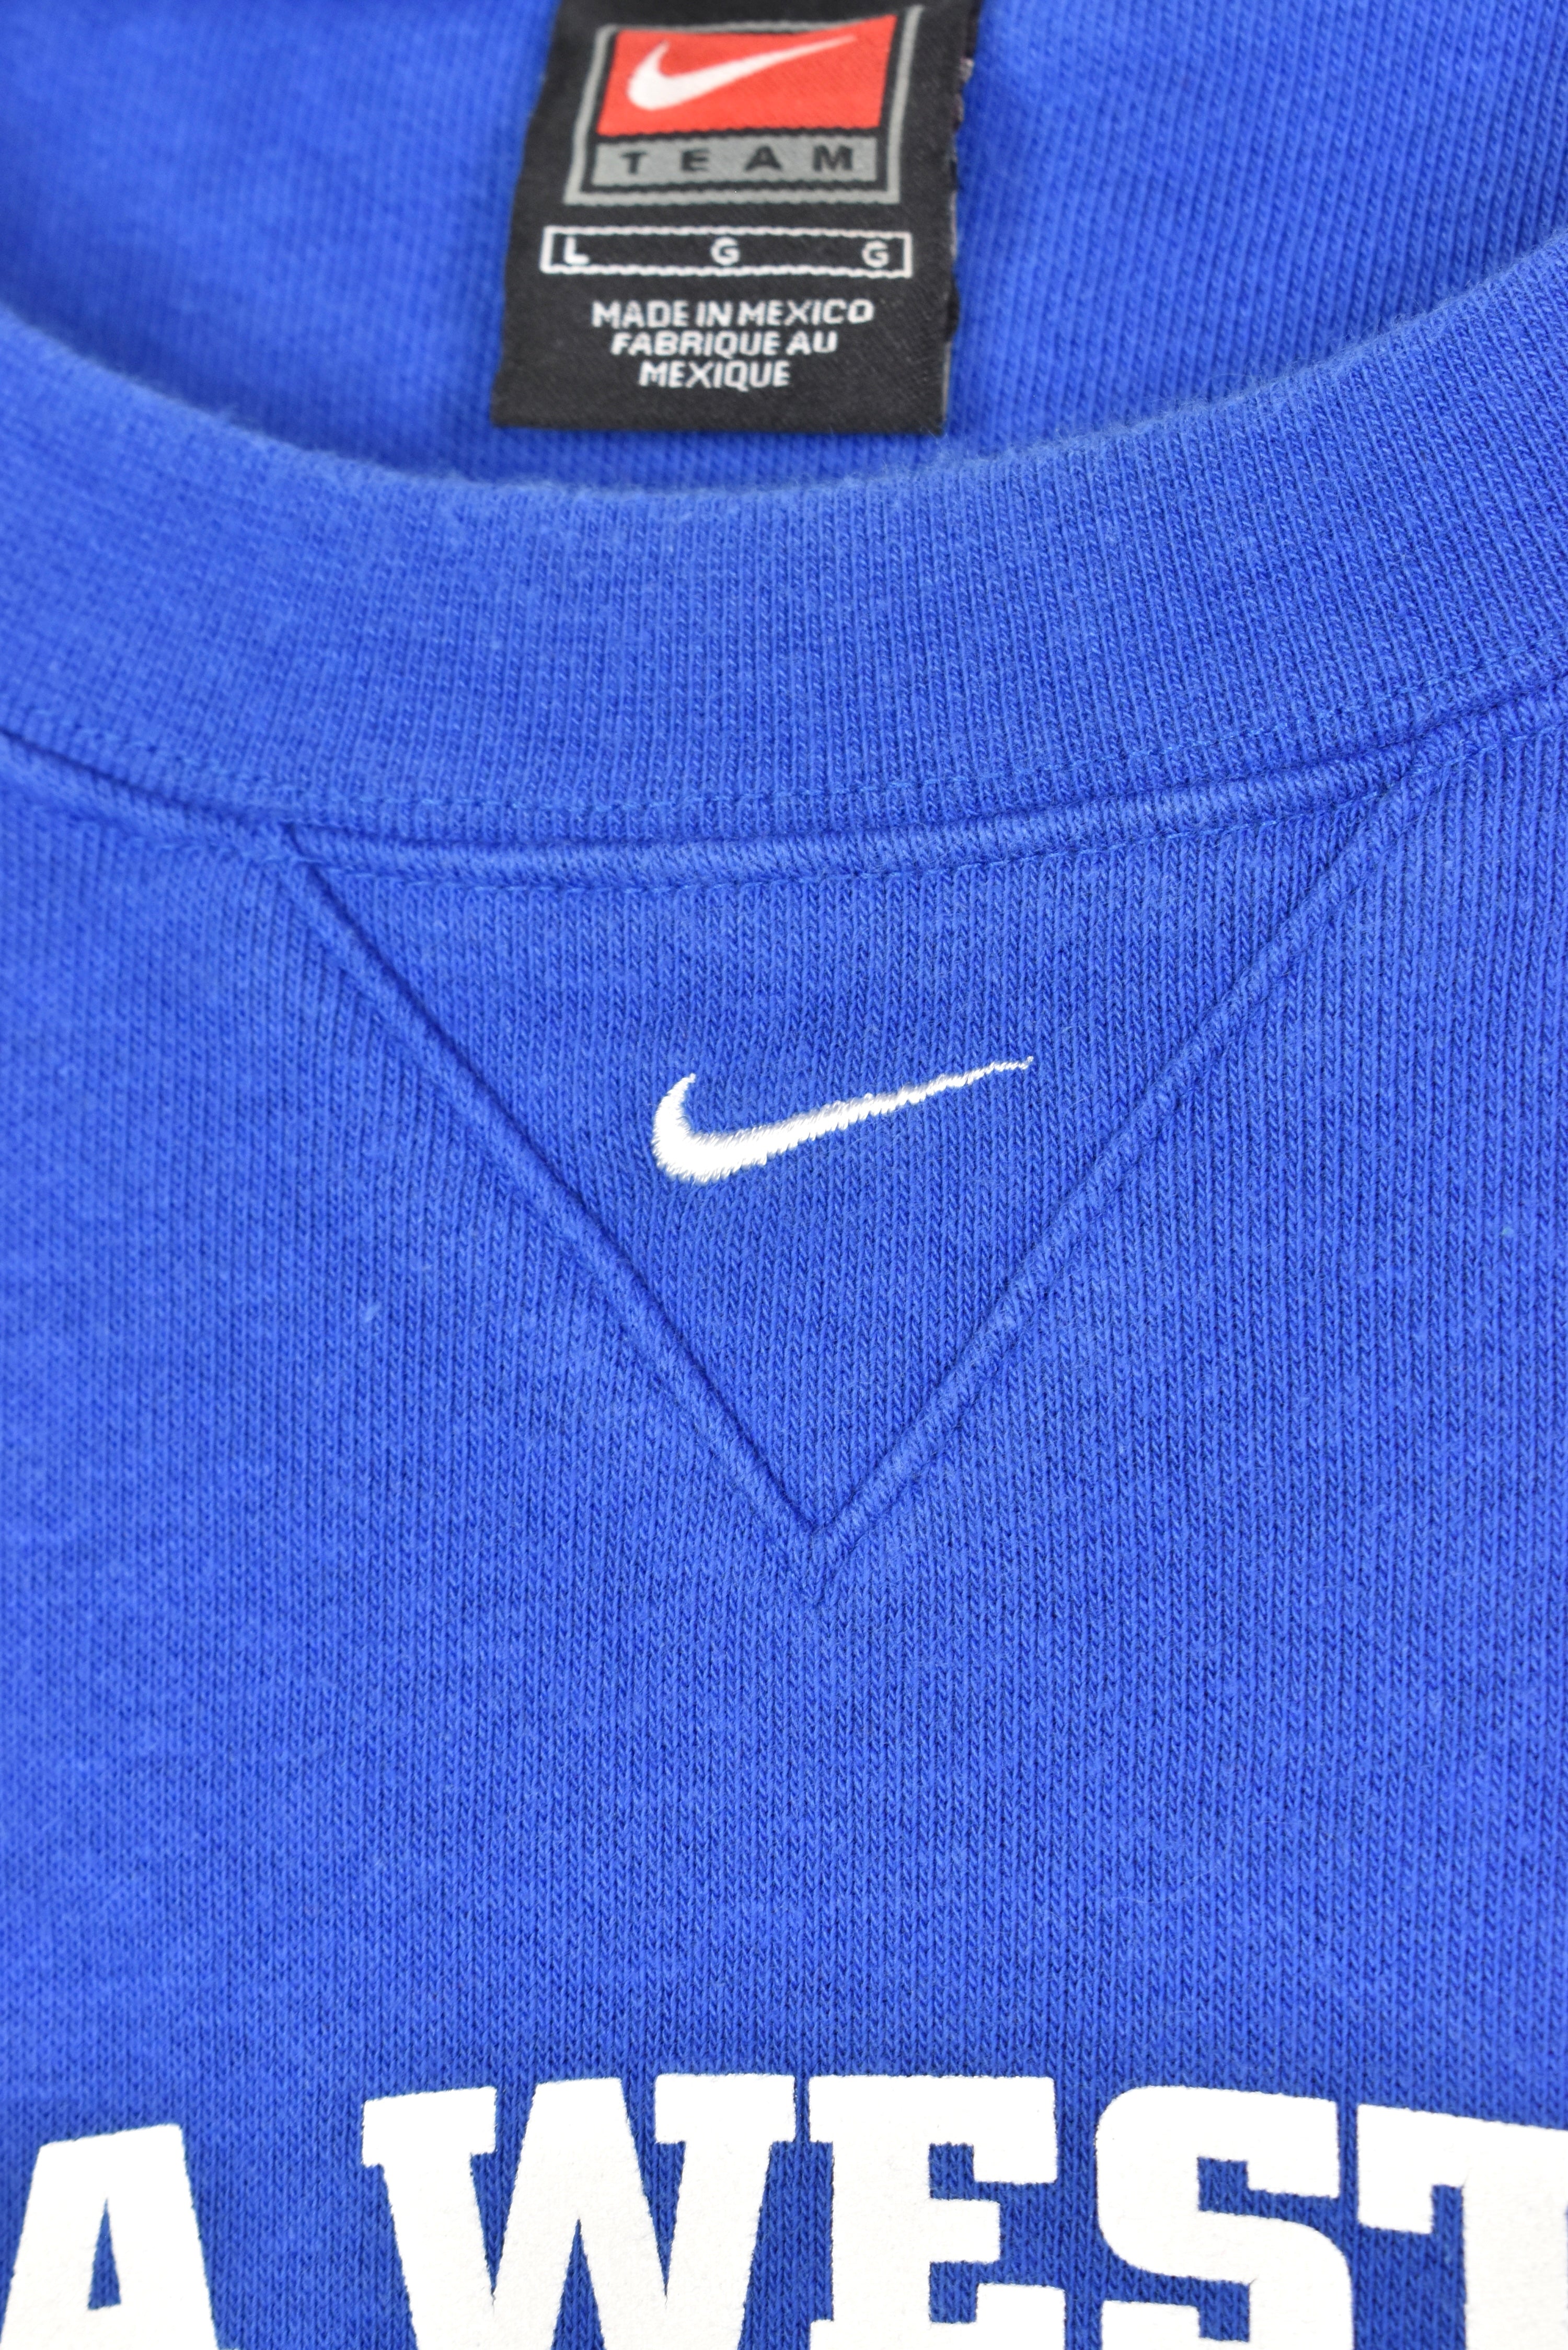 Vintage Nike Iowa Western College blue sweatshirt | XL COLLEGE